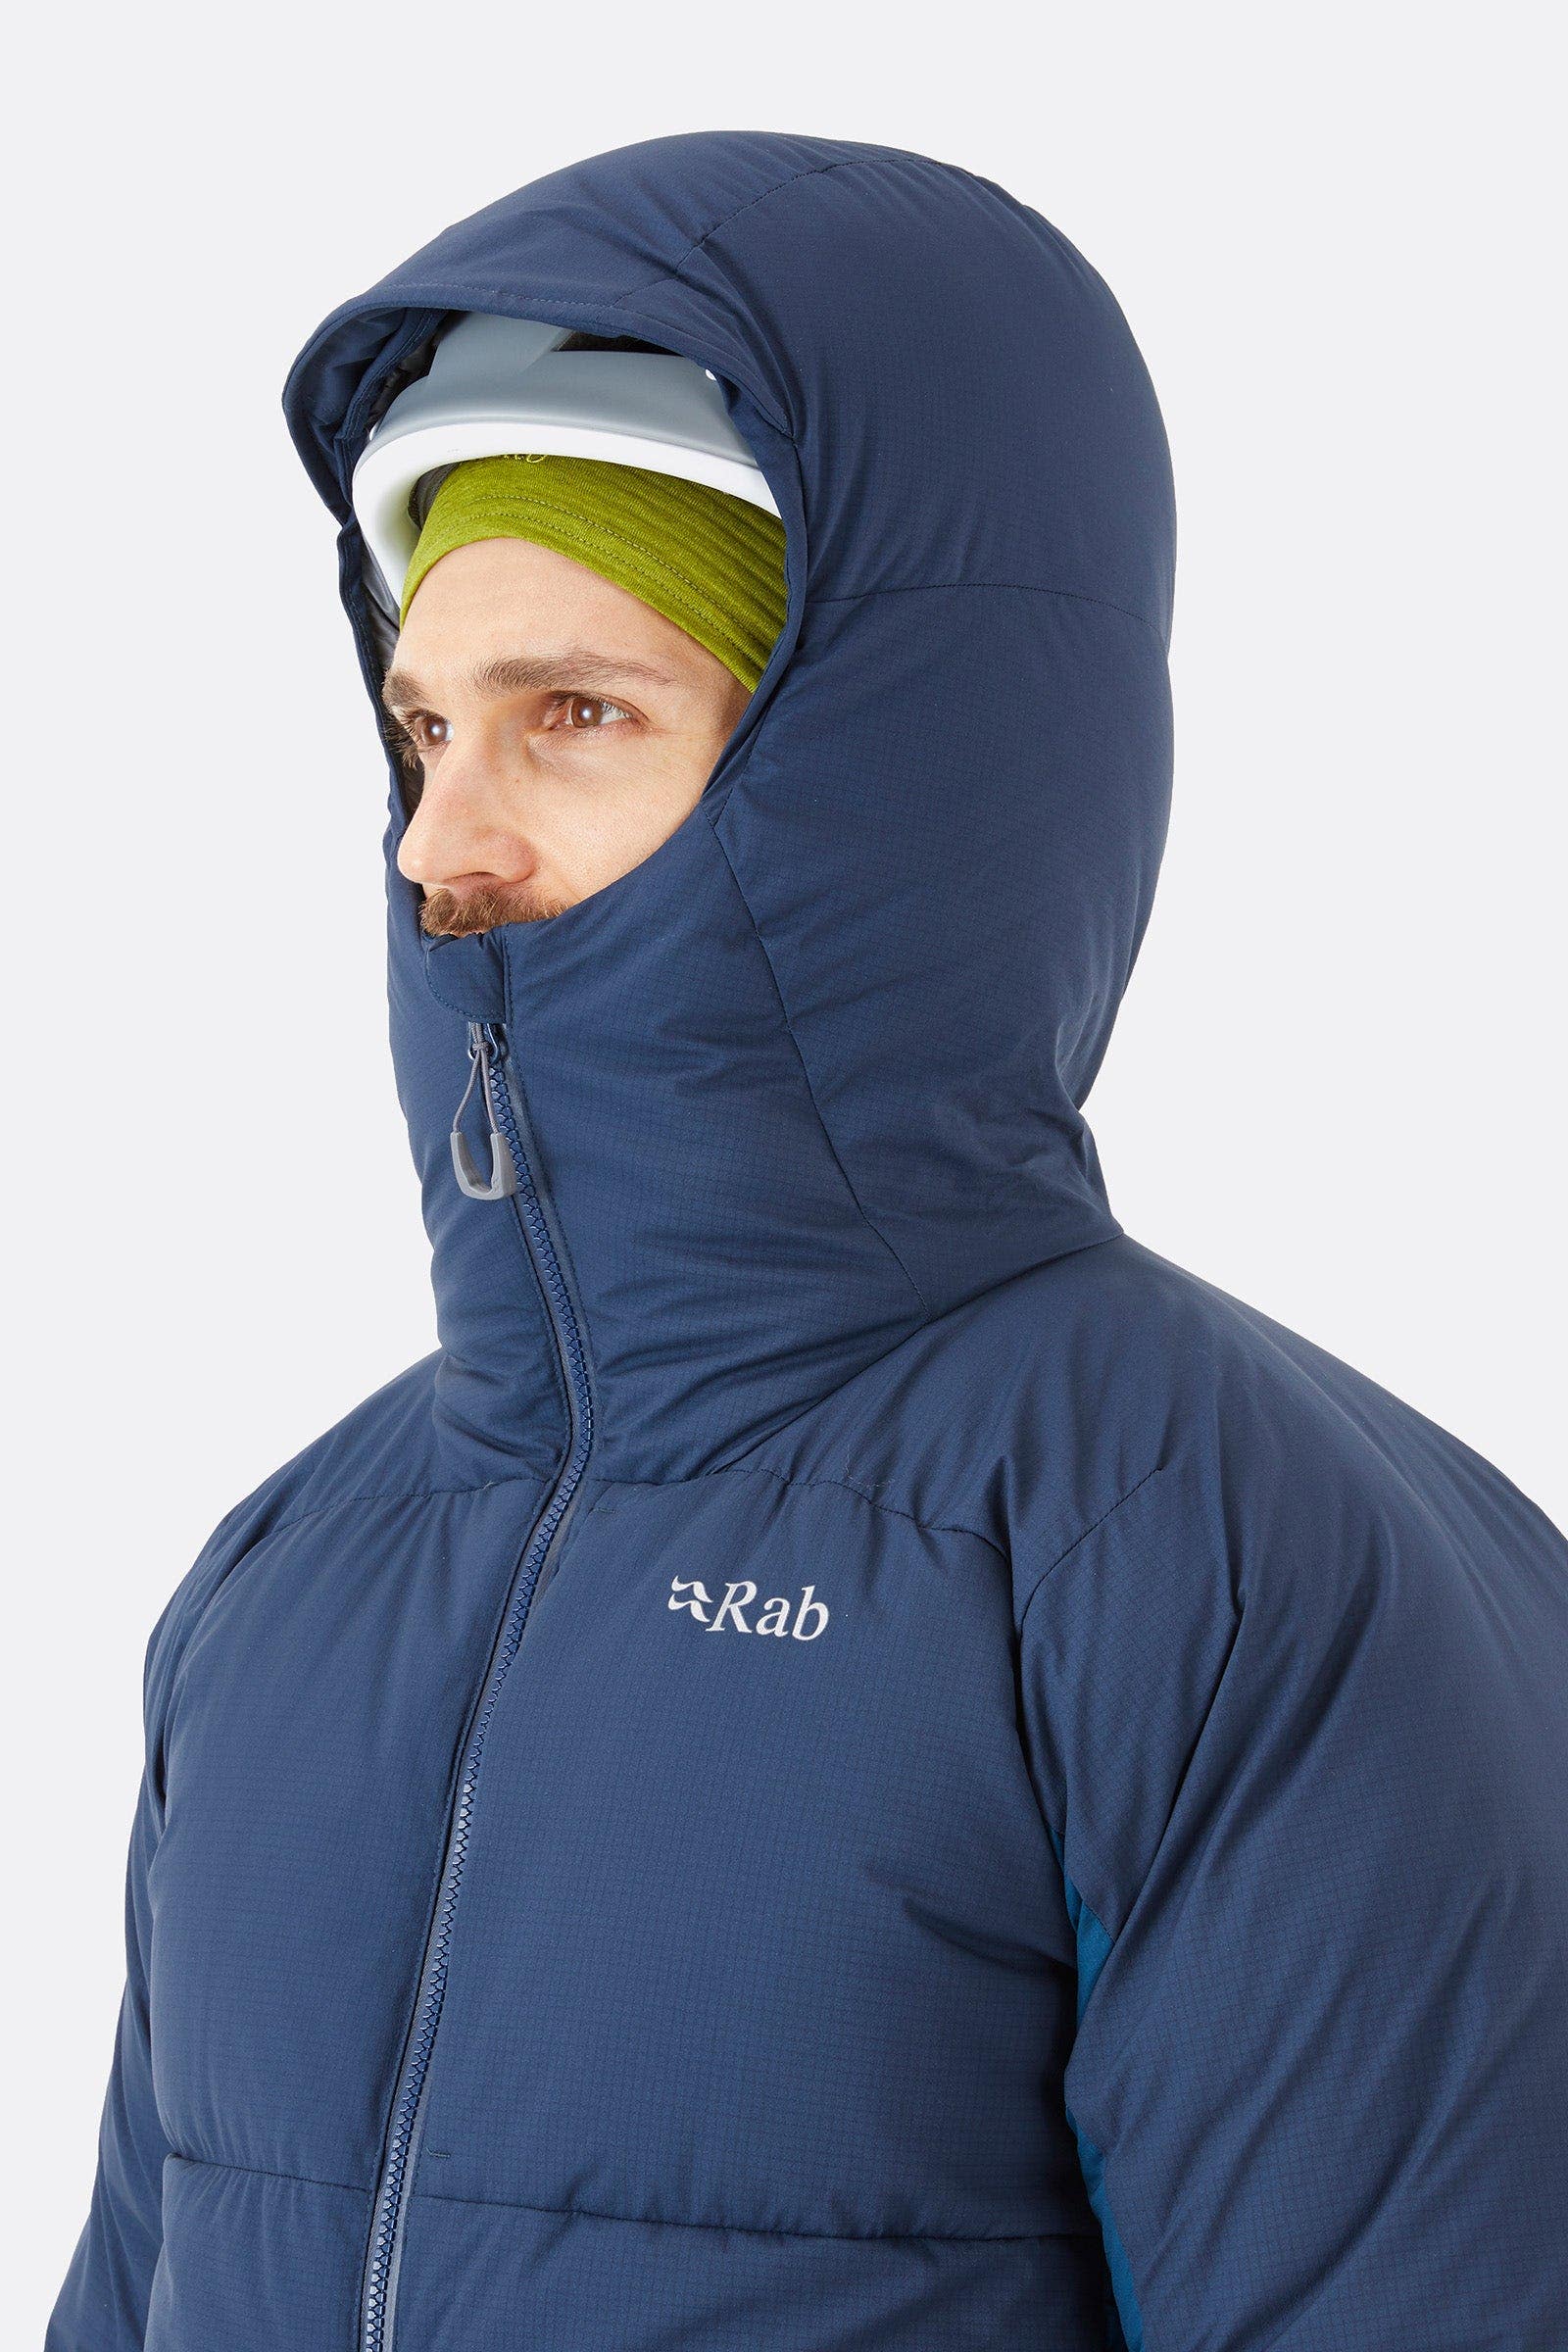 Rab ダウンinfinity jacket ラブ GORE-TEX Lサイズ ダウンジャケット 期間限定特別価格